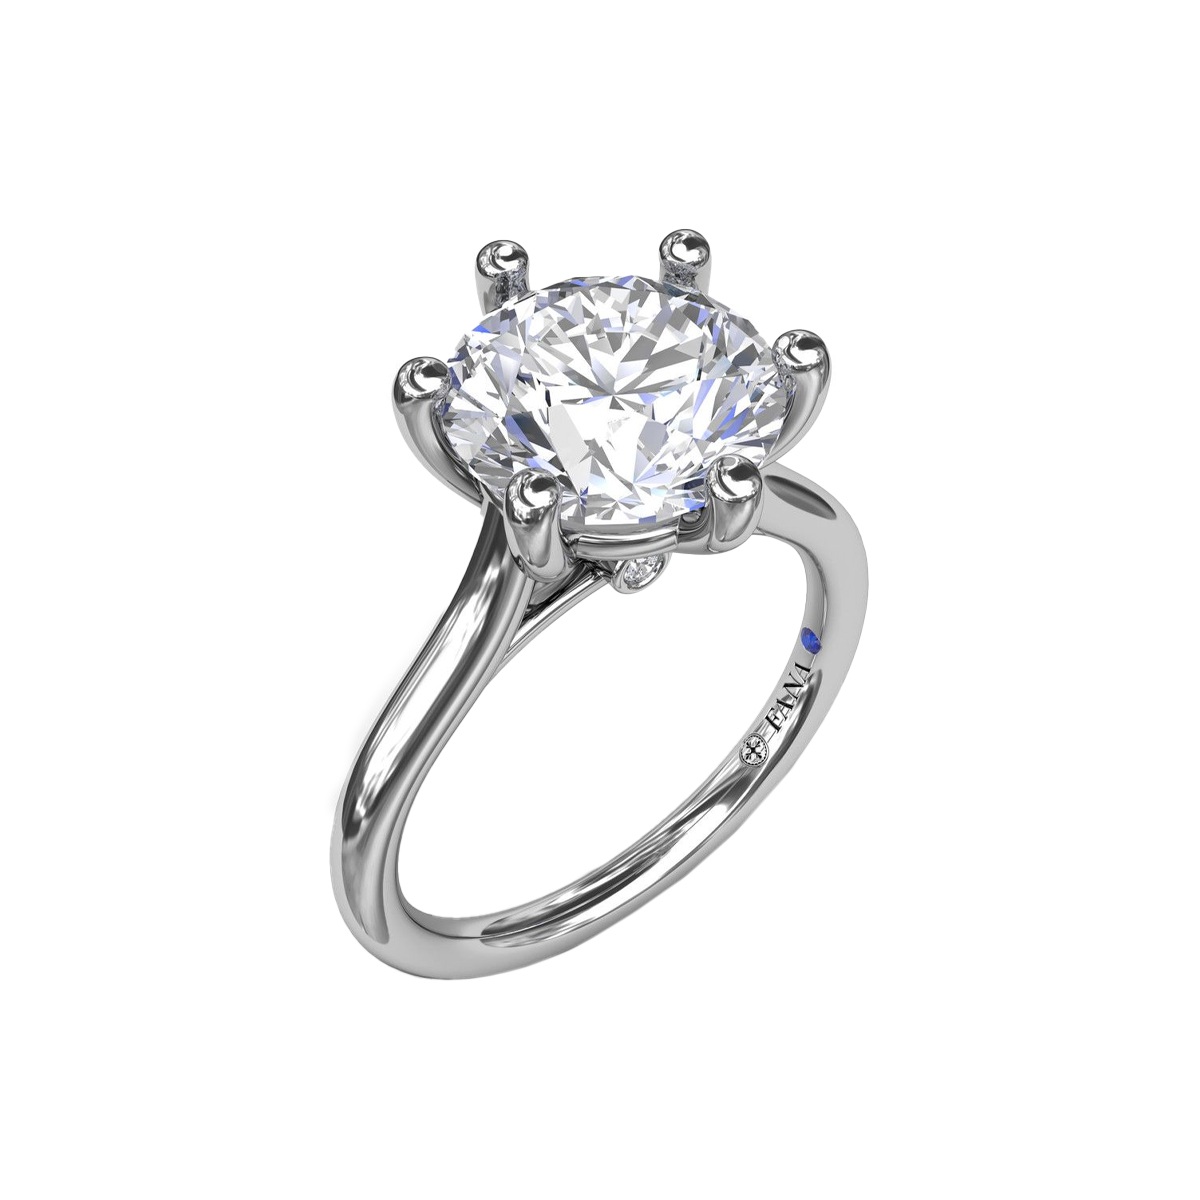 14K White Gold 2 Carat Diamond Engagement Ring Semi-Mounting